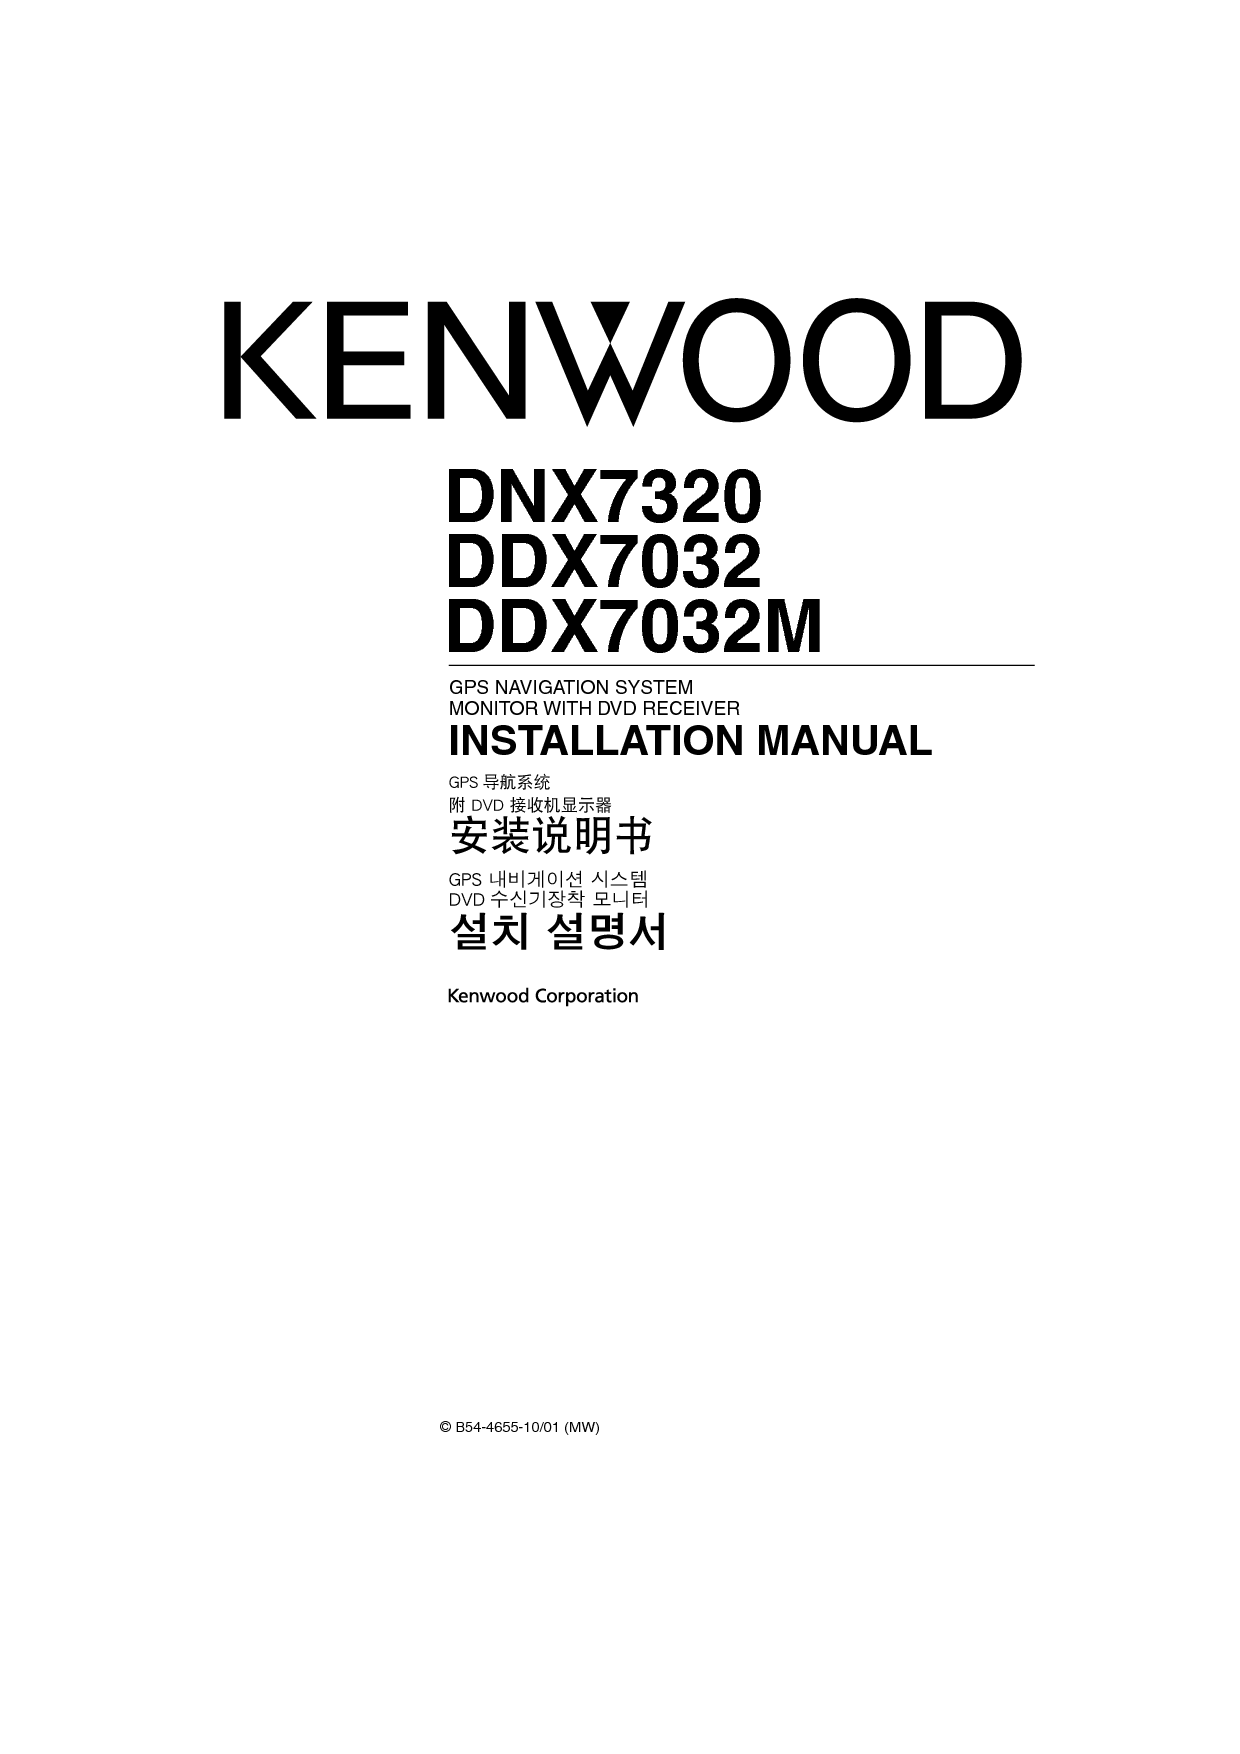 建伍 Kenwood DDX7032 安装说明 封面